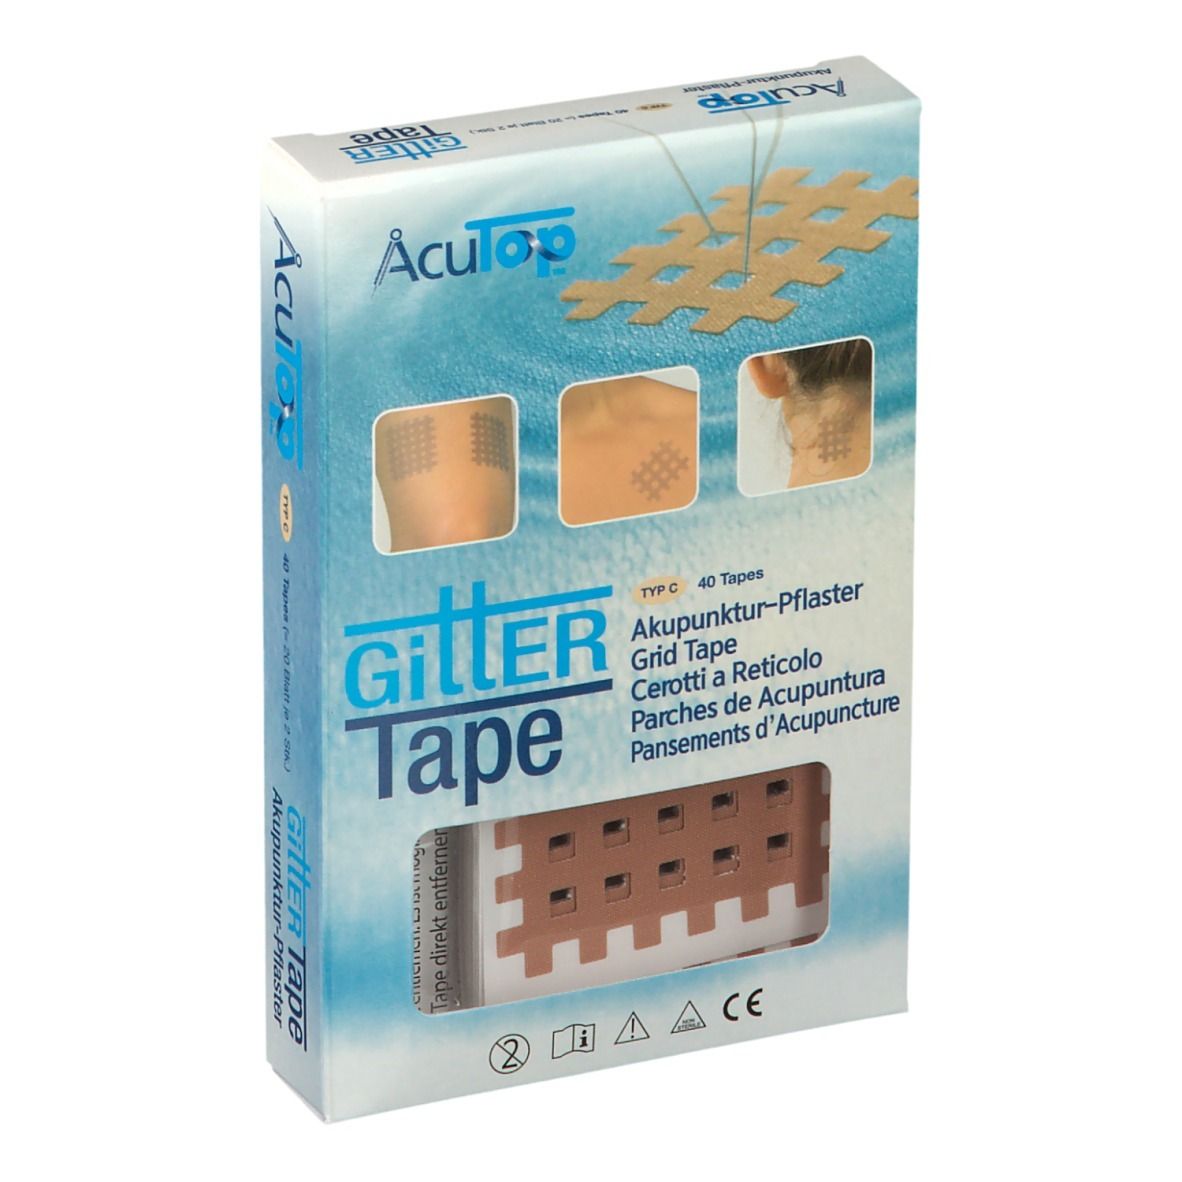 GITTER Tape Akupunktur-Pflaster 4,5 cm x 6 cm